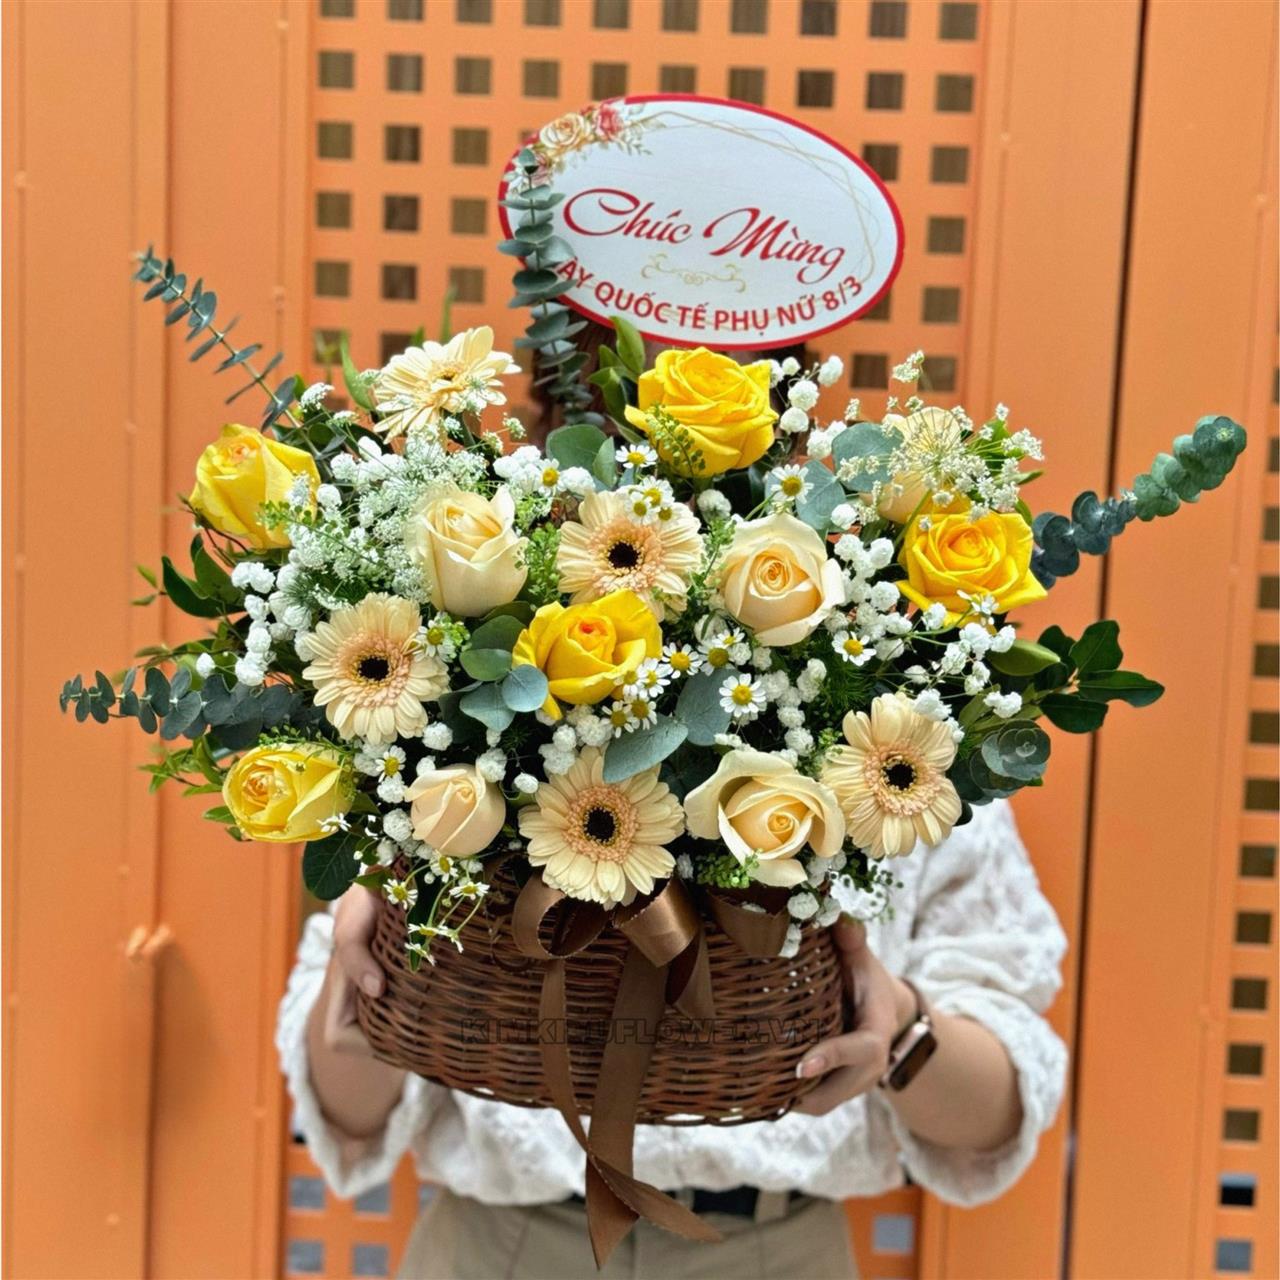 giỏ hoa hồng vàng kết hợp cùng giỏ mây tạo nên giỏ hoa nhỏ nhắn, thích hợp tặng người lớn tuổi